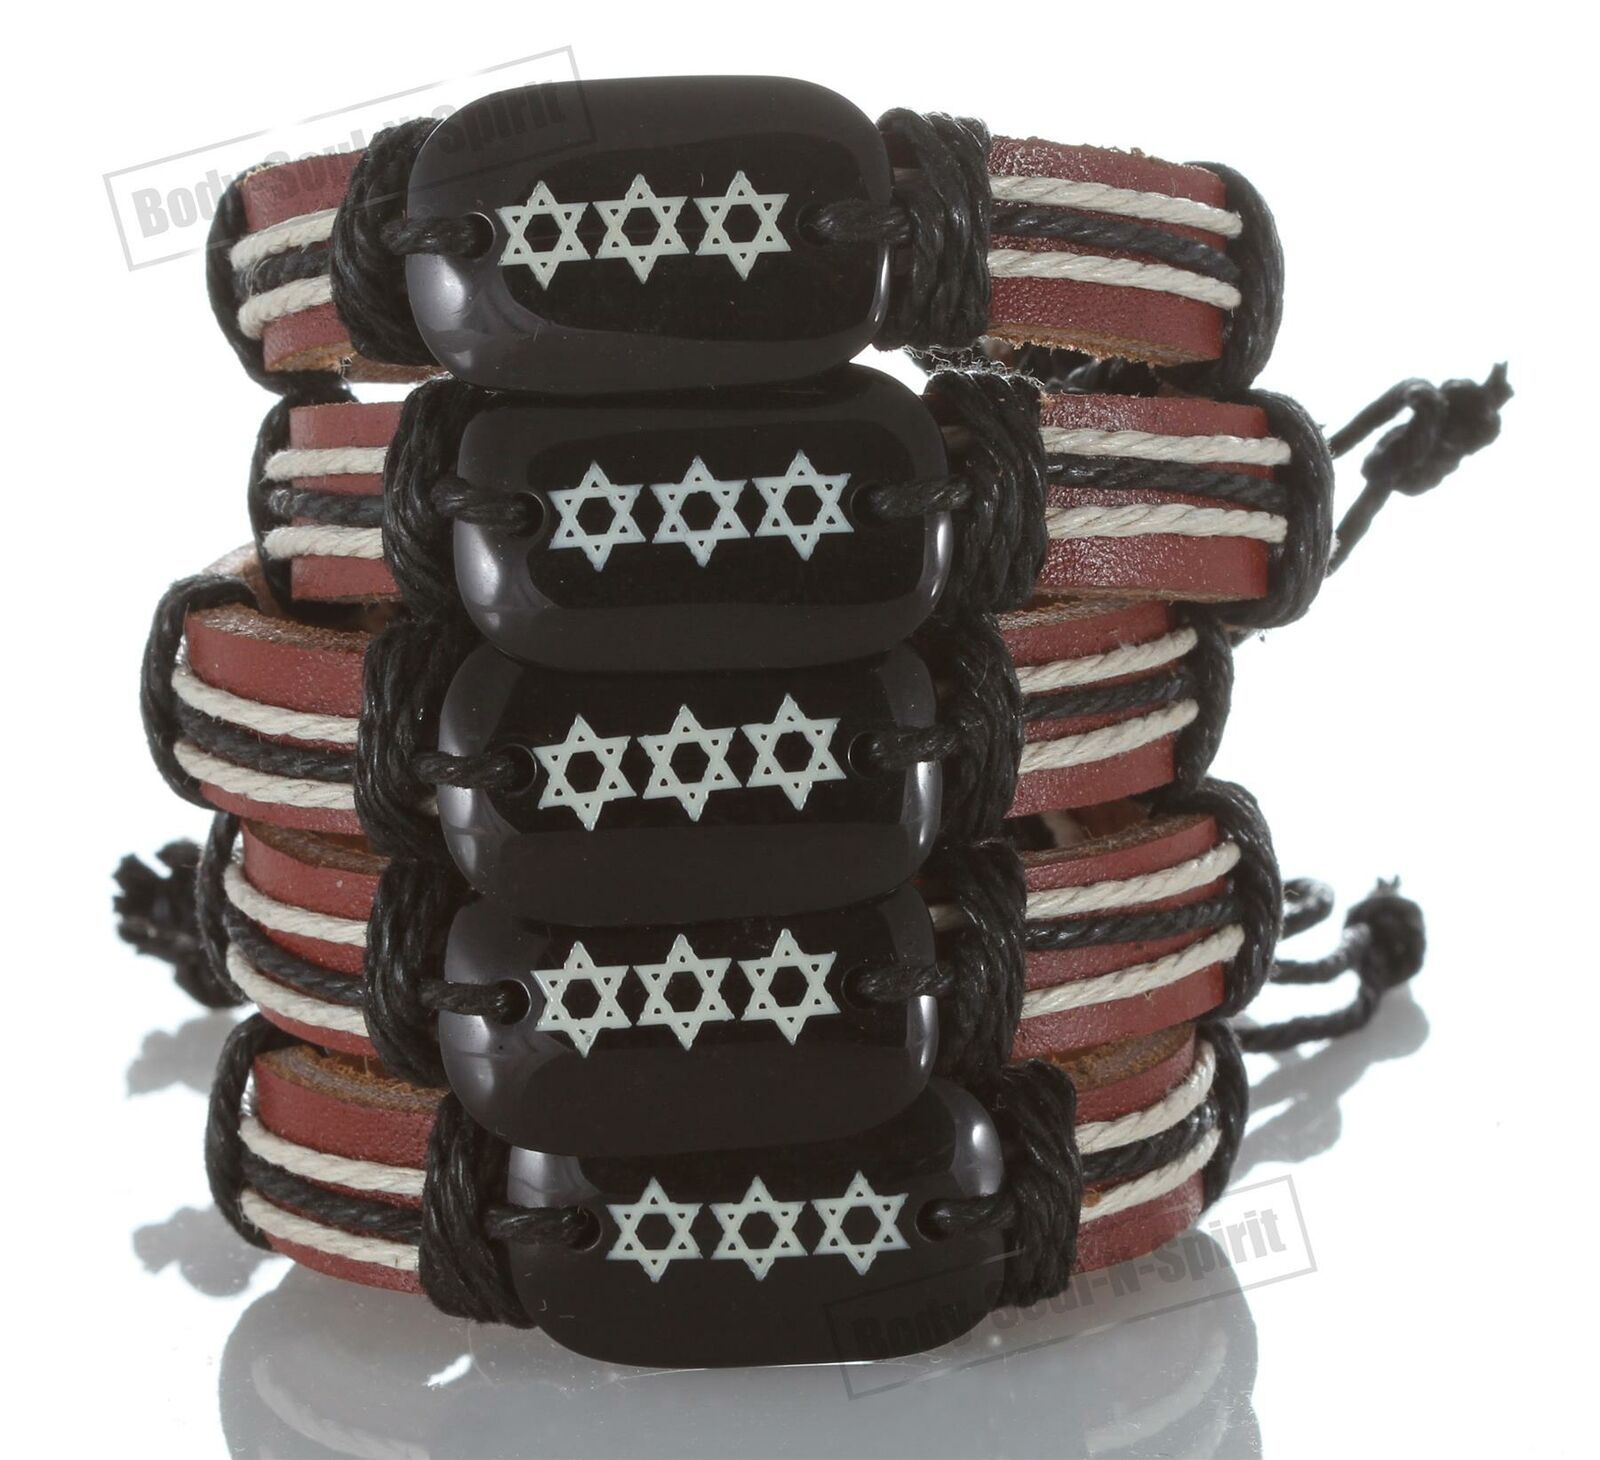 Model Star of David Leather Bracelet Jewish Cuff Bangle Wristband cool stylish